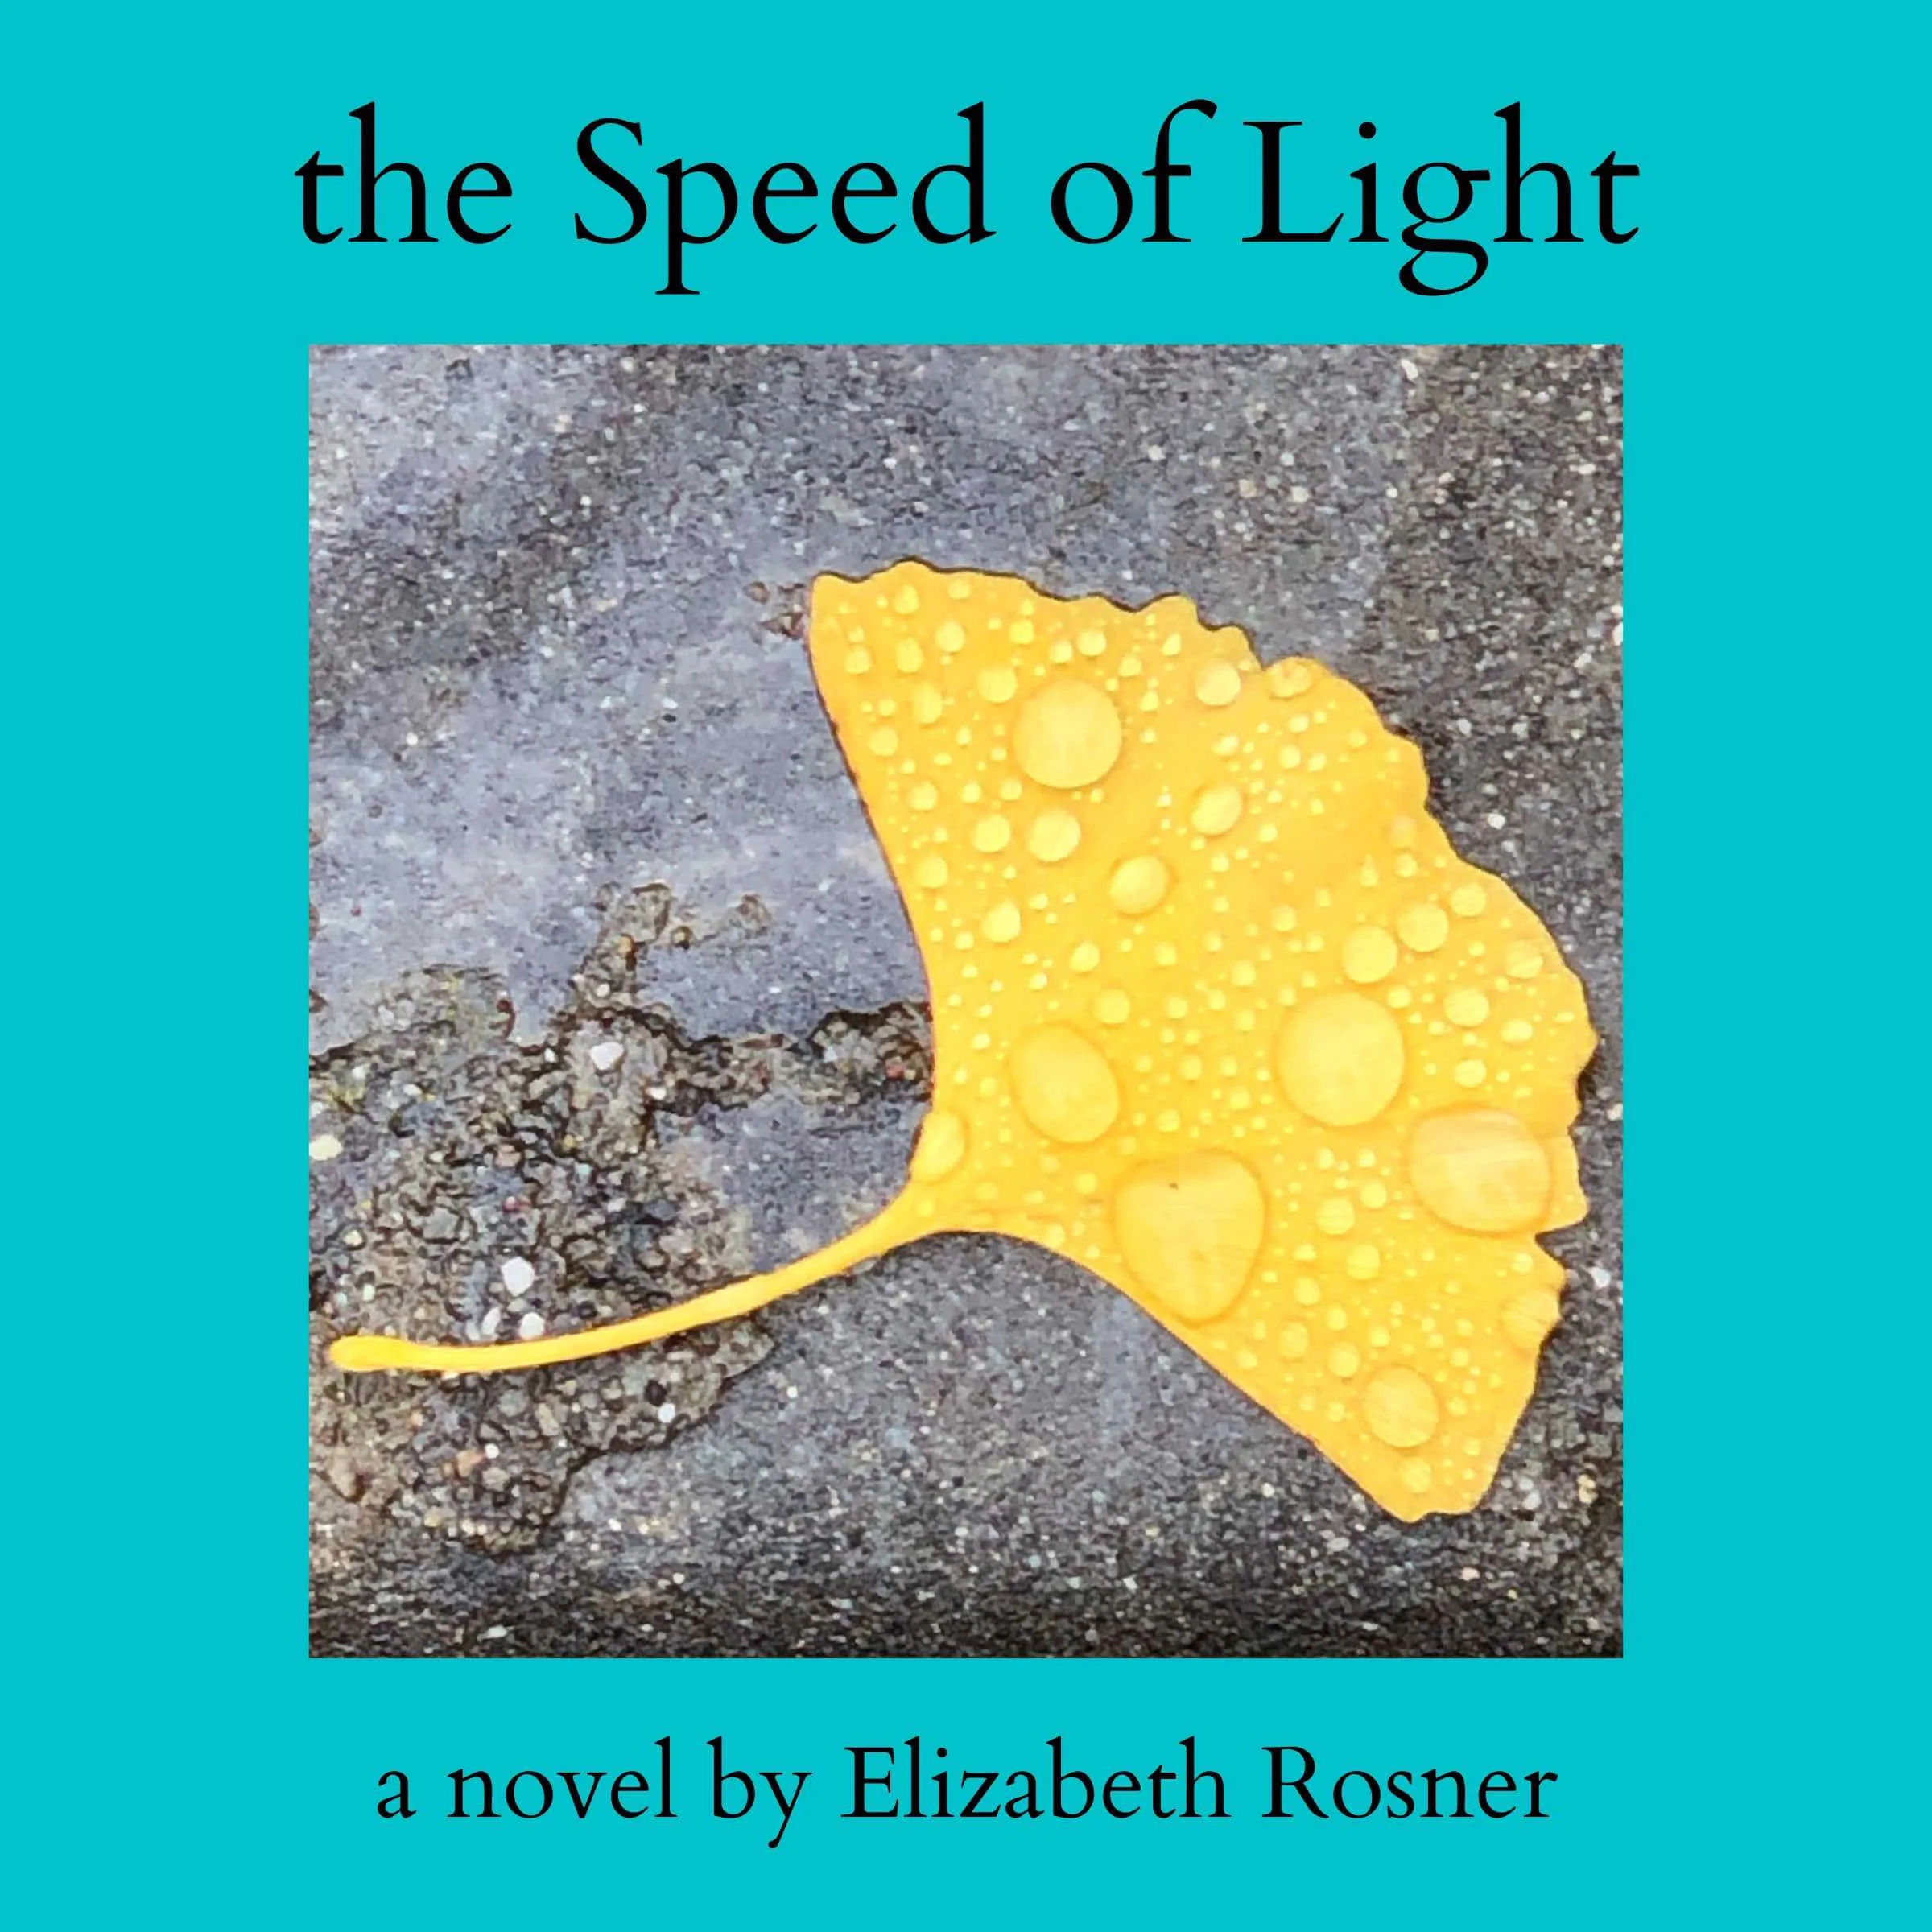 The Speed Of Light, a novel by Elizabeth Rosner